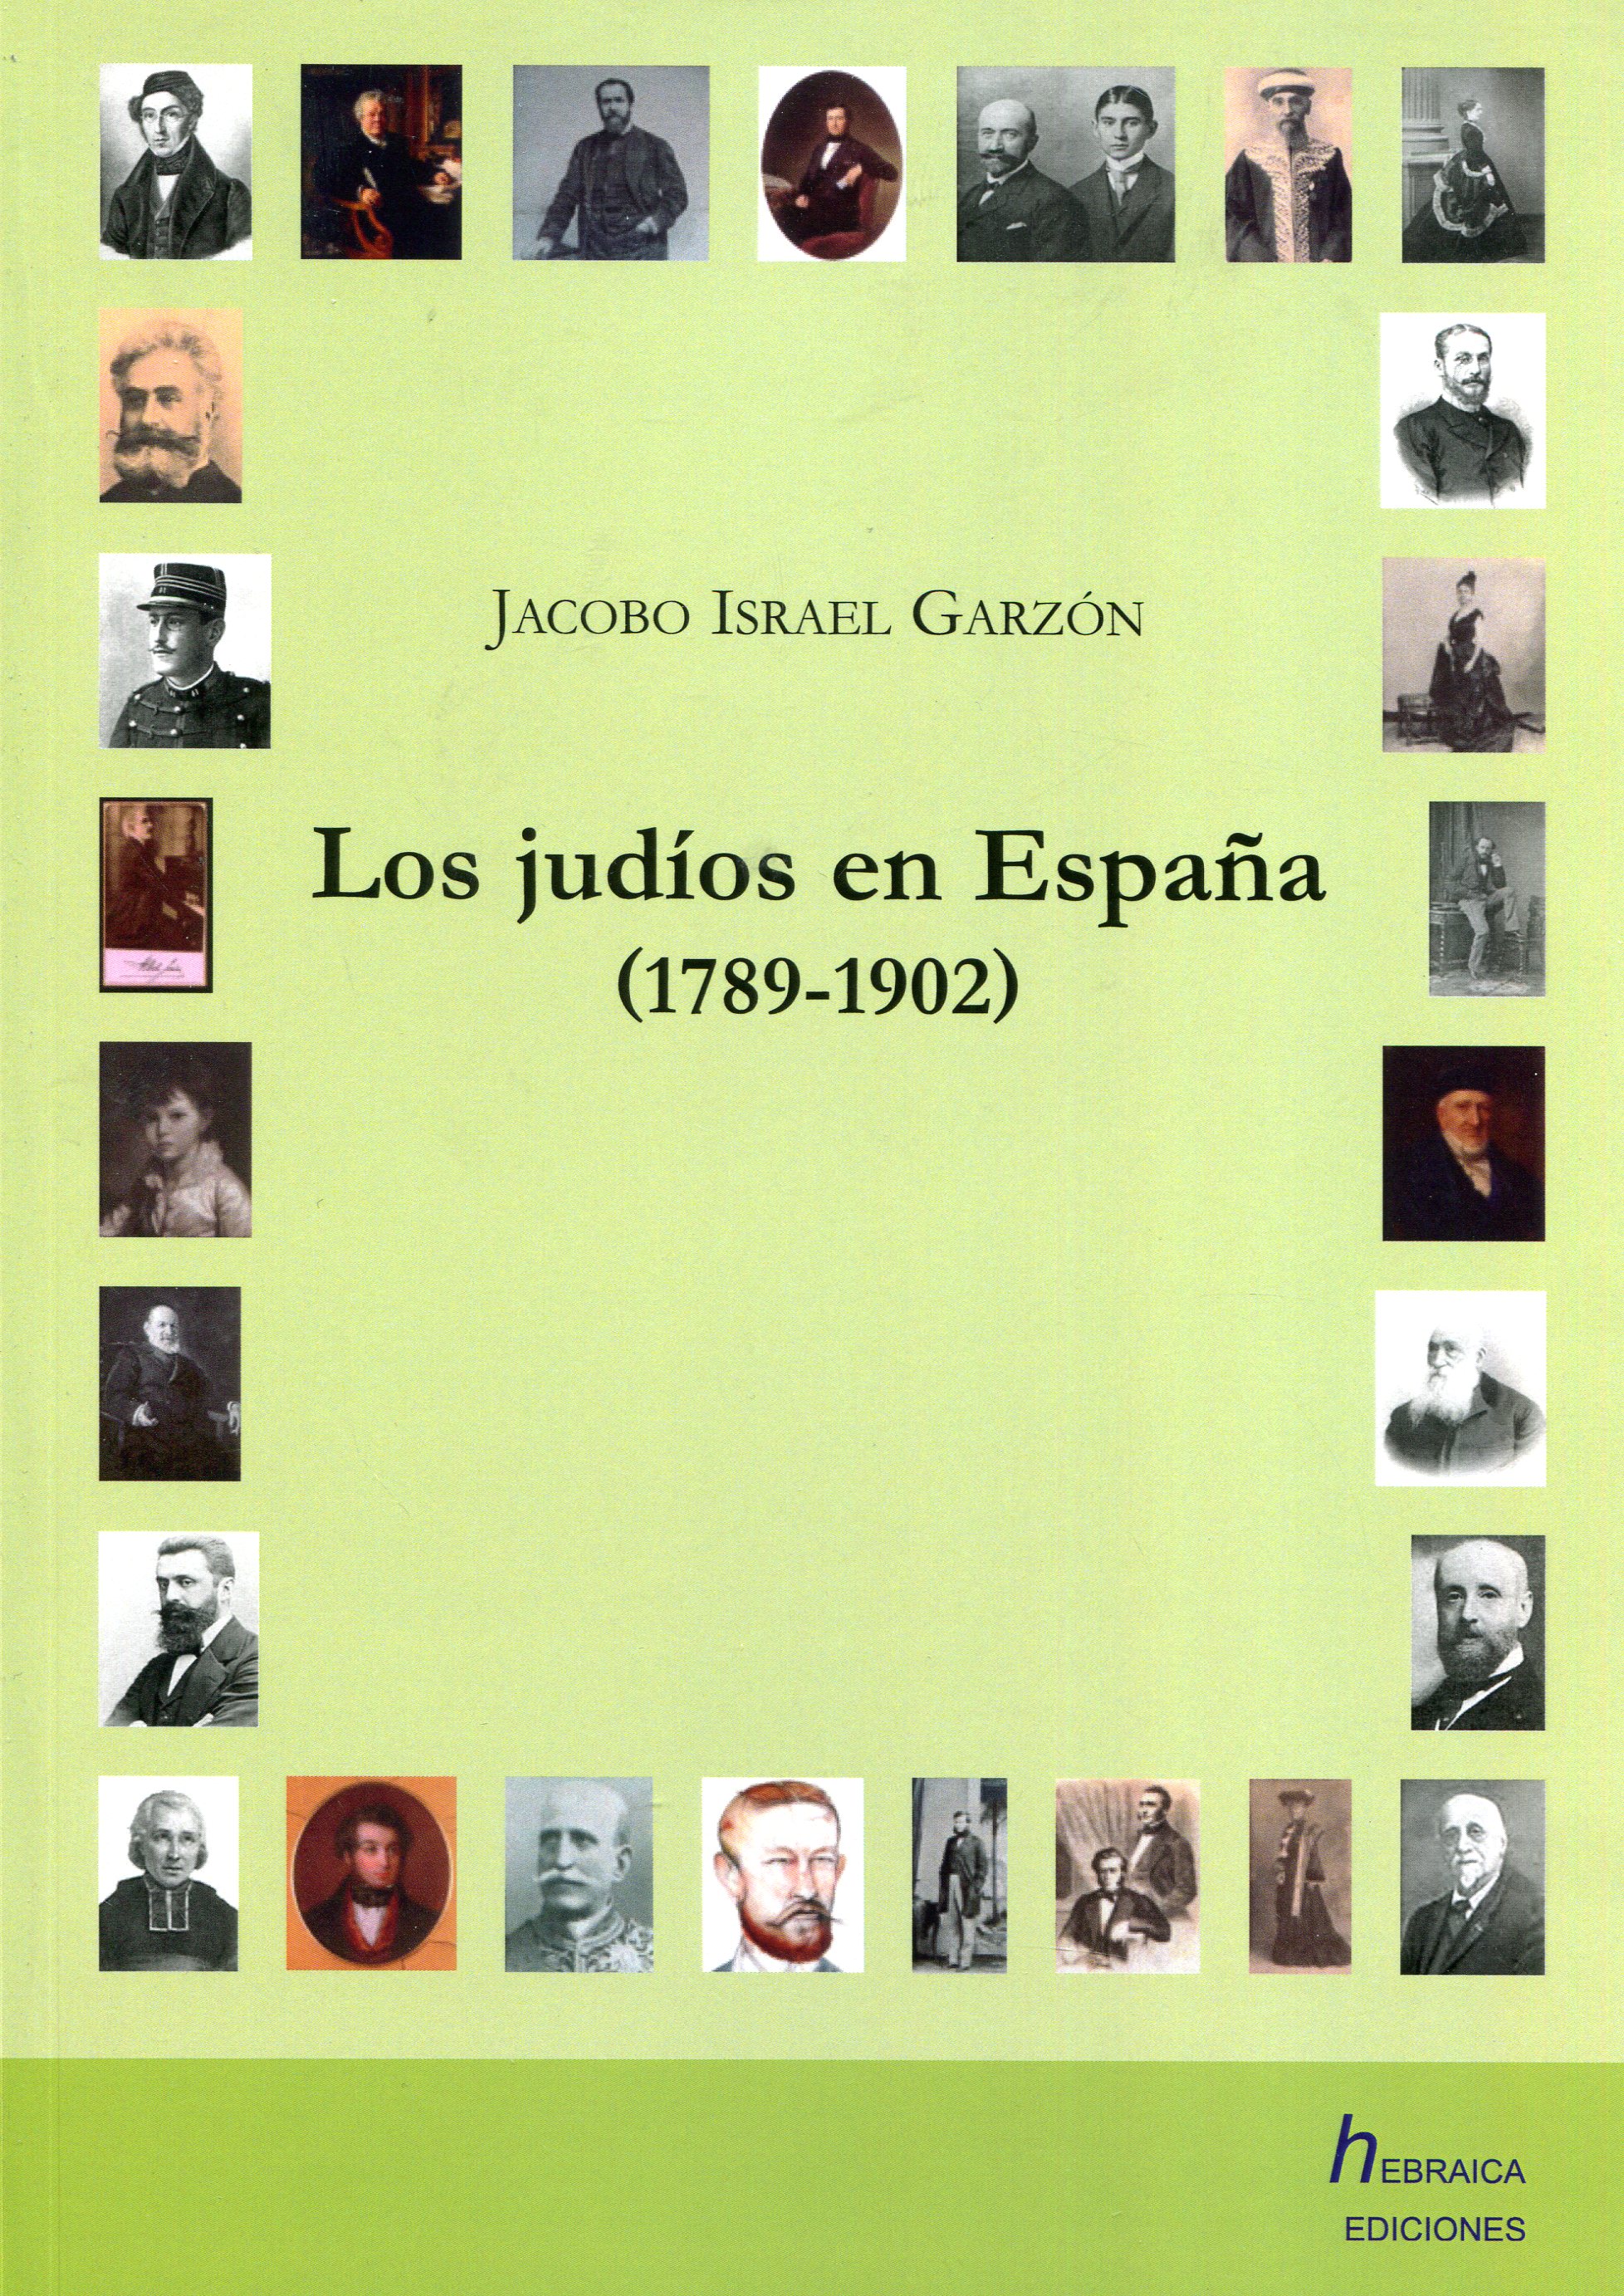 Los judíos en España